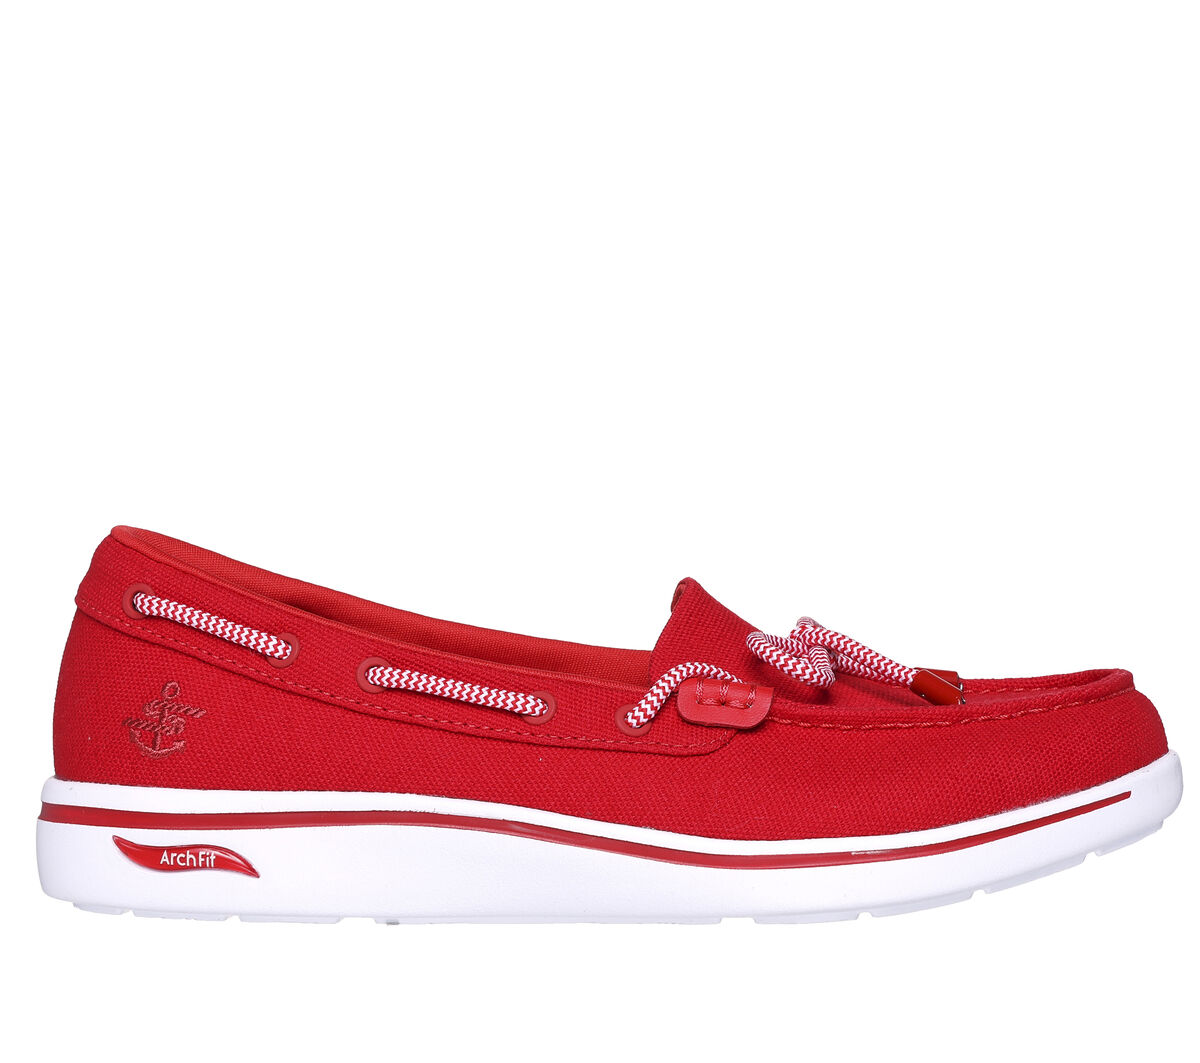 Skechers Fashion Fit Women's Shoes Beige 149748-TPE